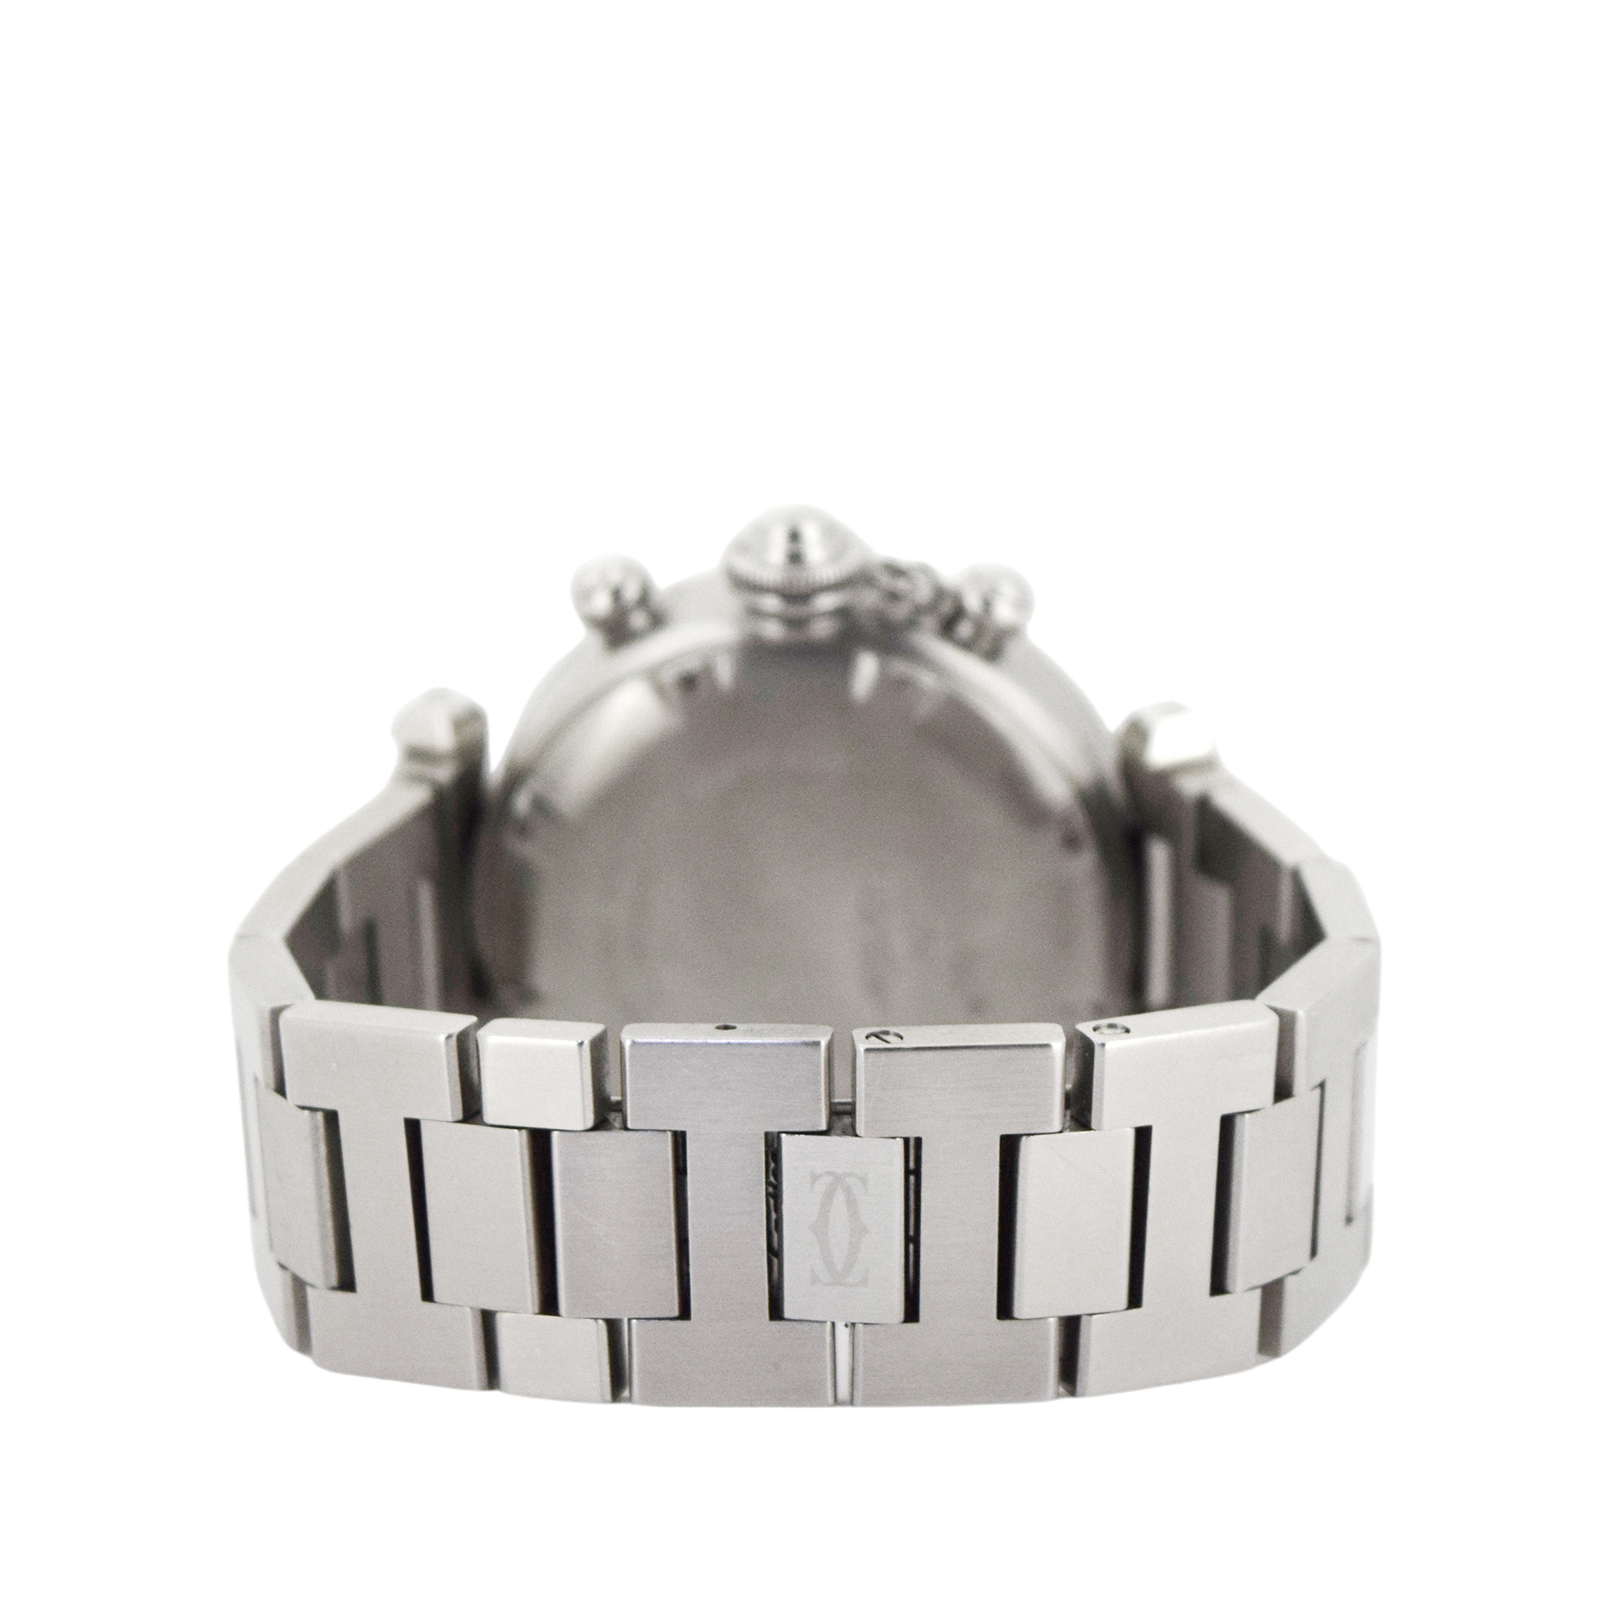 Cartier カルティエ  パシャC クロノ  W31039M7  ボーイズ ユニセックス  メンズ 腕時計